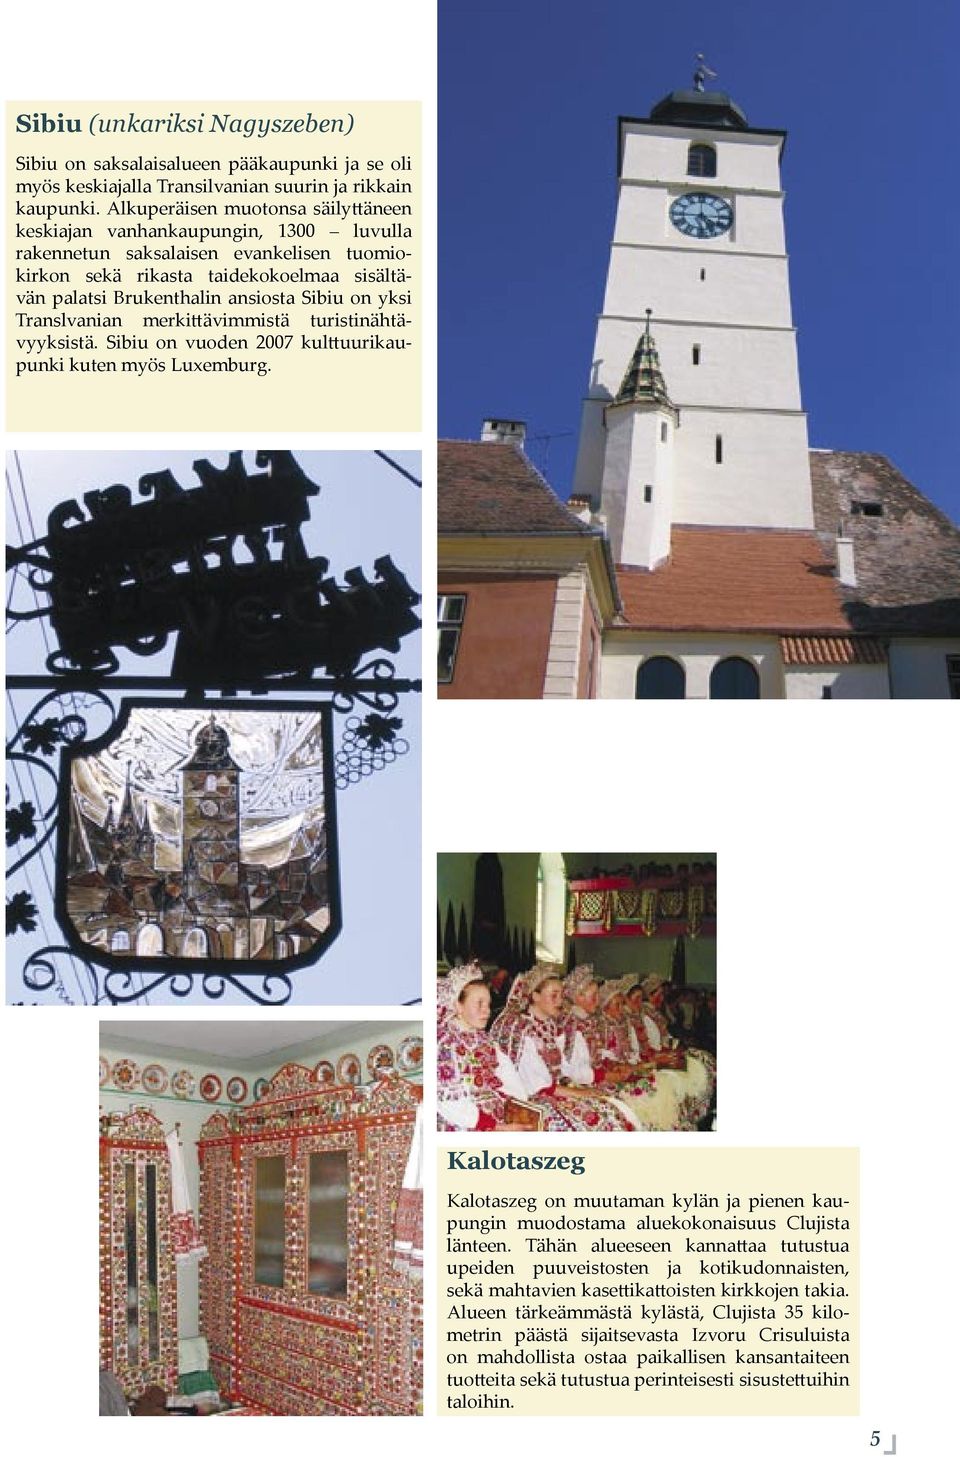 yksi Translvanian merki ävimmistä turistinähtävyyksistä. Sibiu on vuoden 2007 kul uurikaupunki kuten myös Luxemburg.